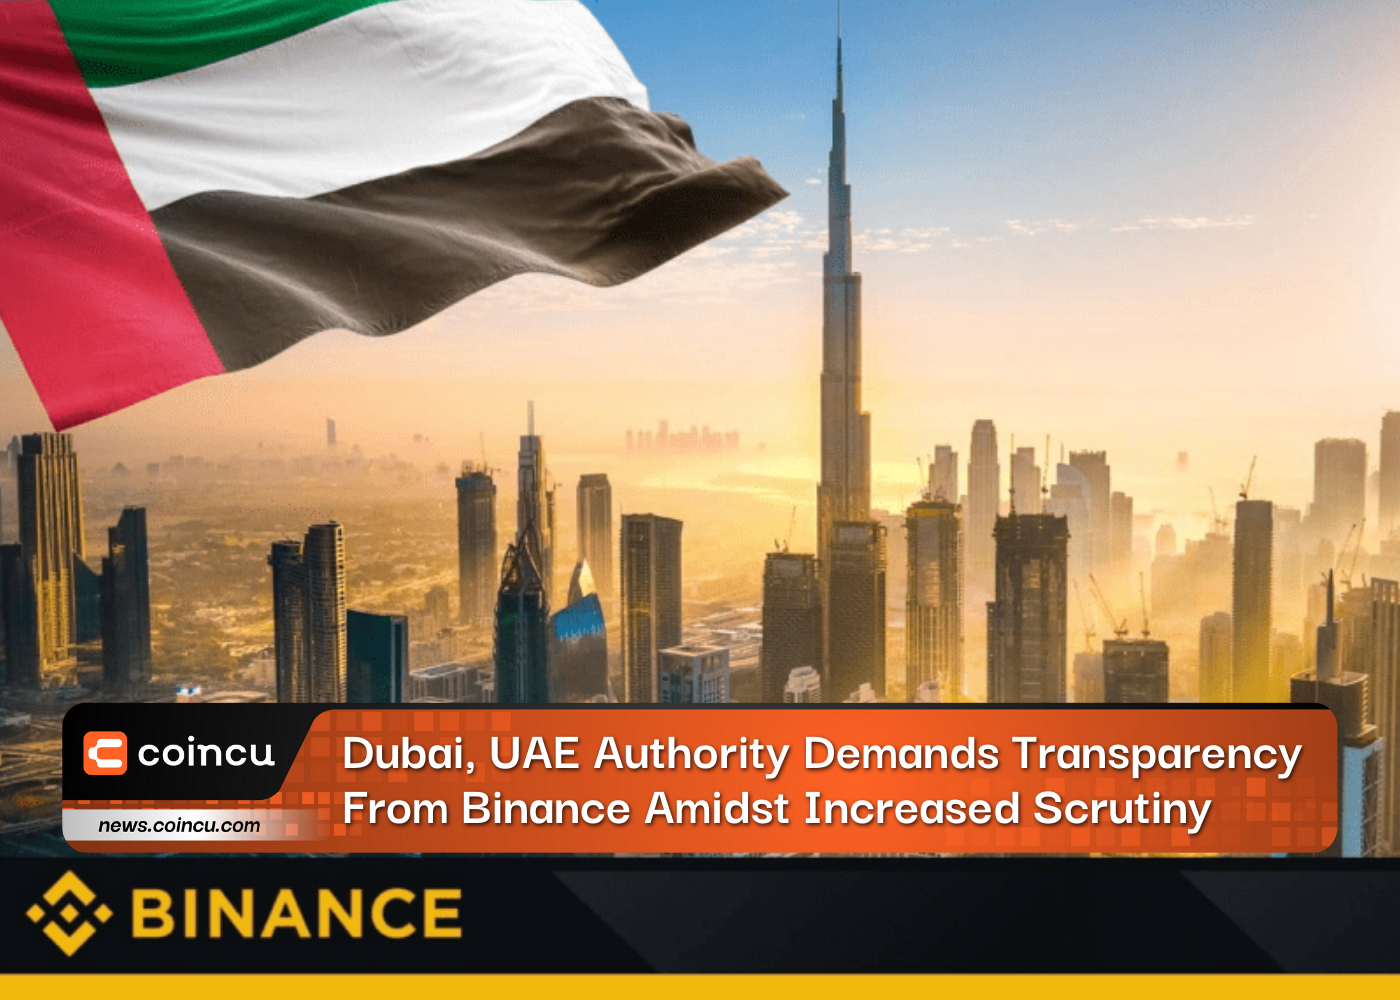 두바이, UAE 당국은 조사가 강화되는 가운데 바이낸스의 투명성을 요구합니다.